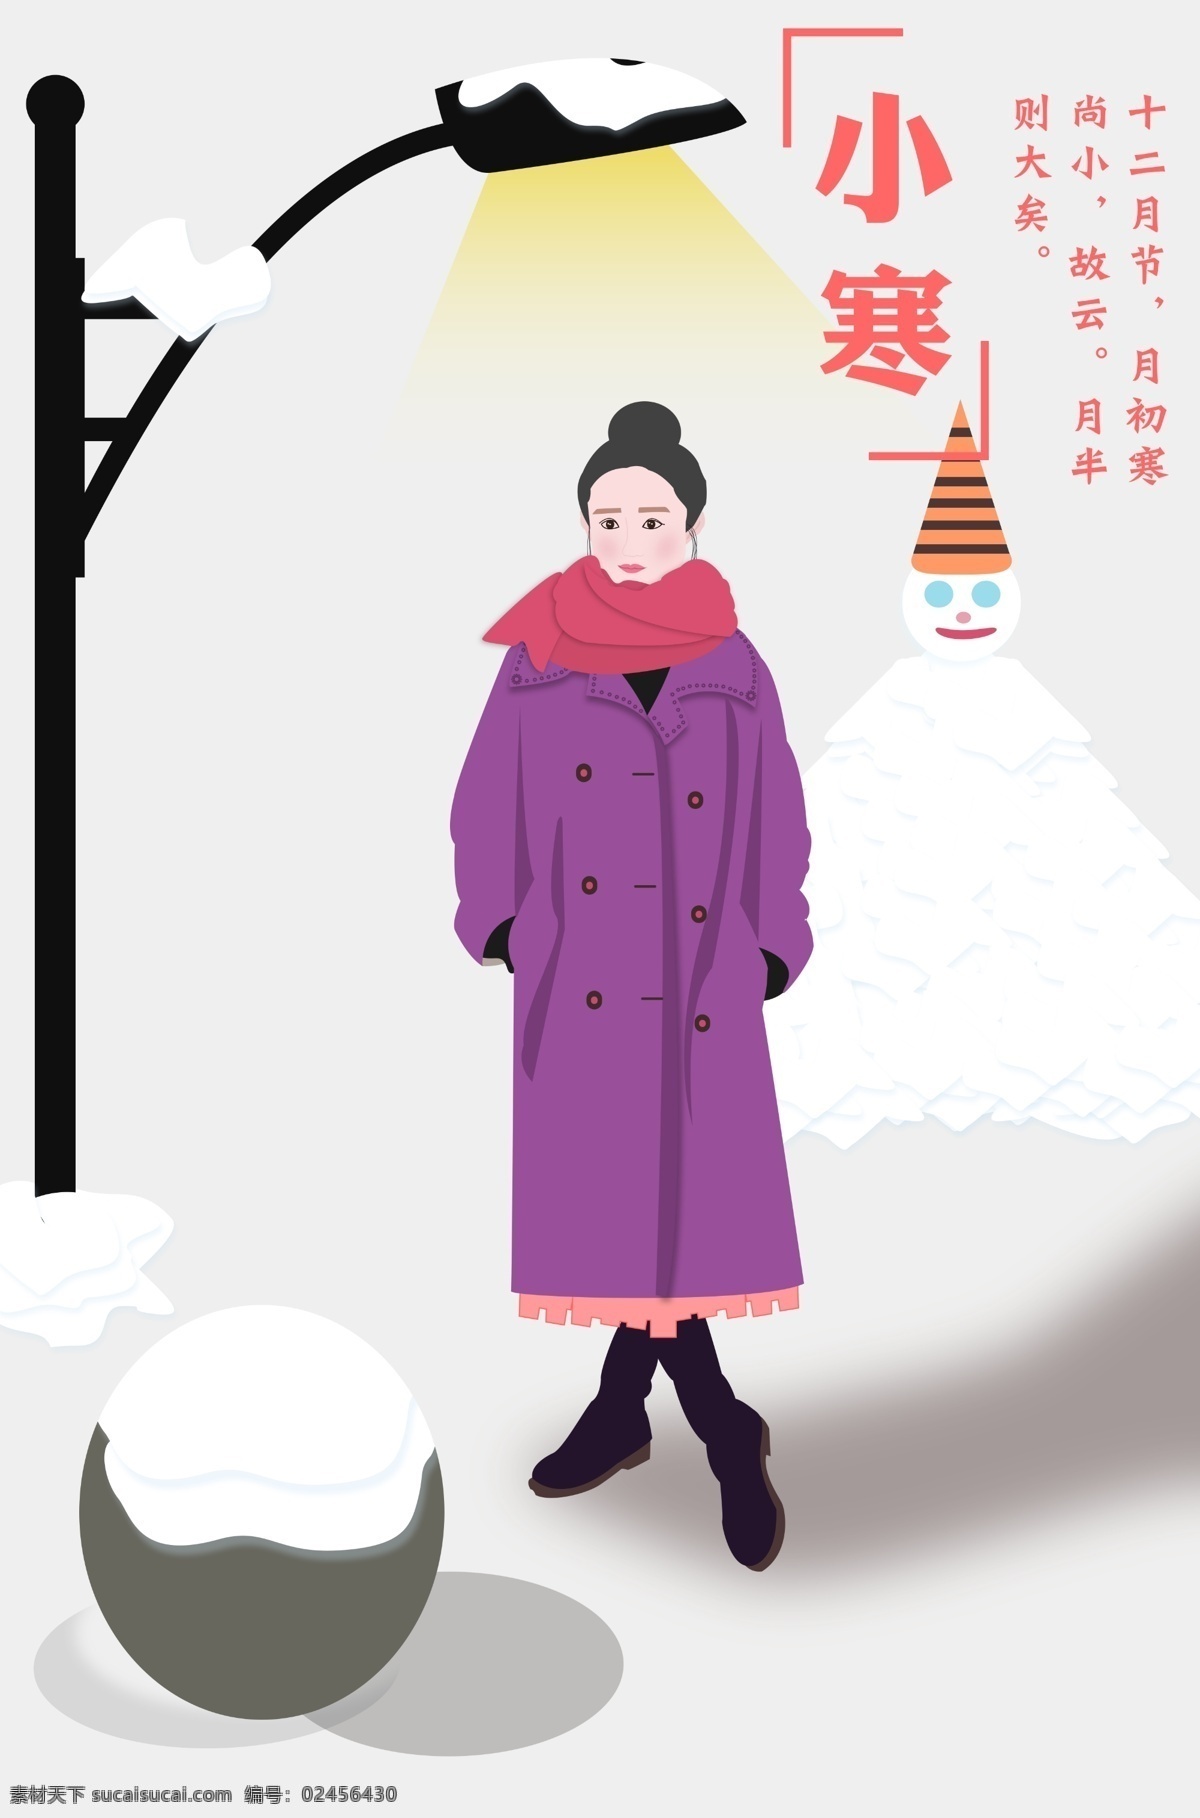 二十四节气 小寒 海报 插画 卡通美女 路灯 石头 雪人